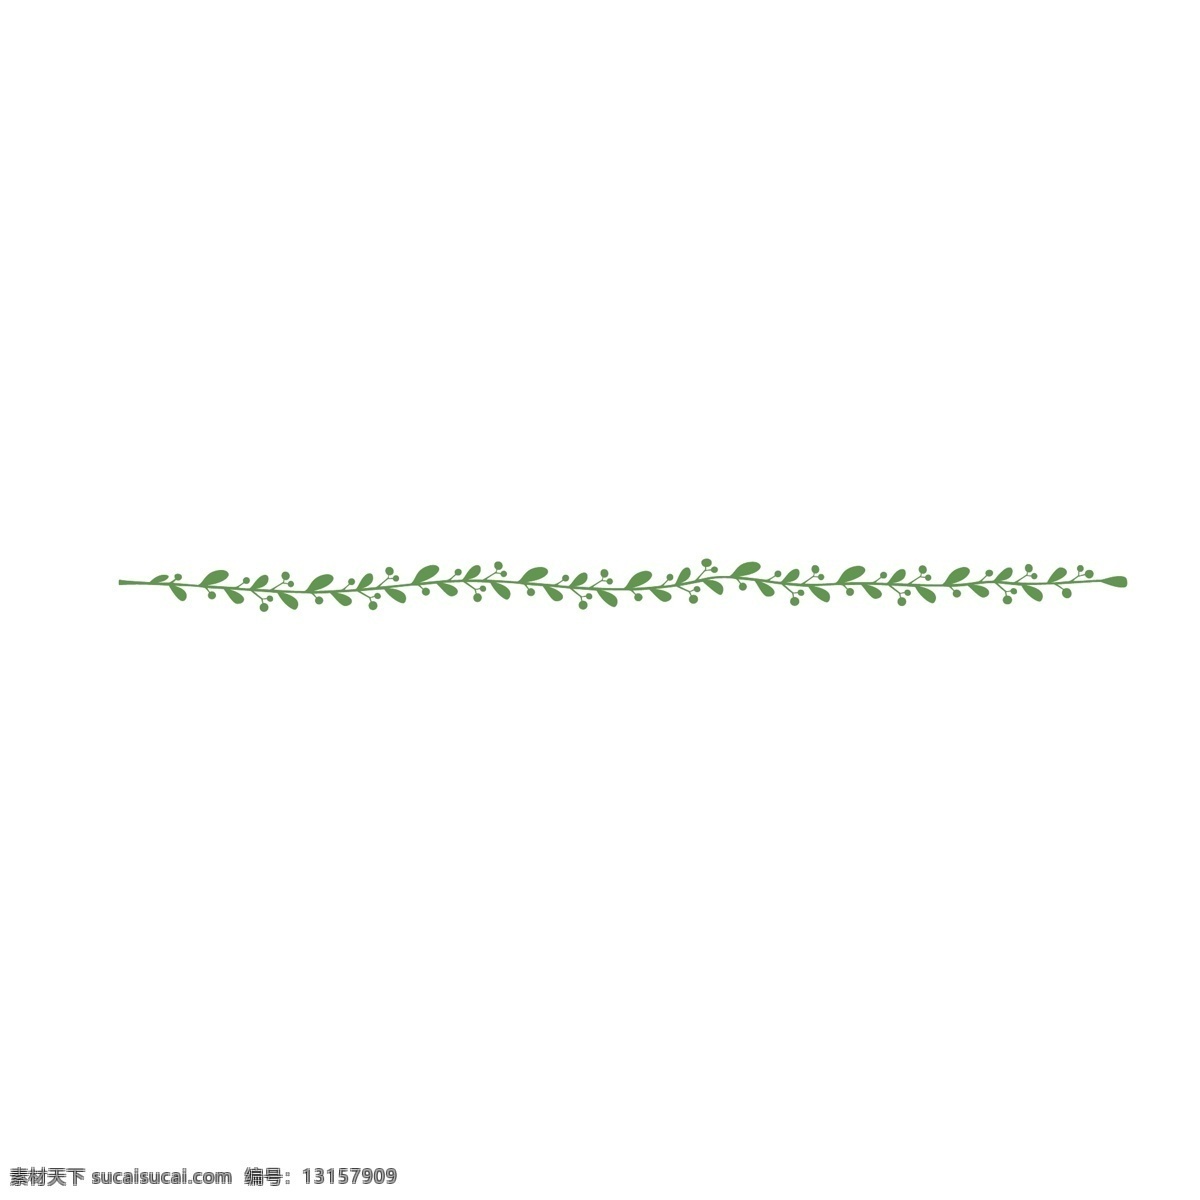 藤蔓 绿色藤蔓 植物 绿色植物 叶子 绿叶 卡通藤蔓 卡通植物 分割线 分割素材 矢量植物 绿植树叶 枝条 底纹边框 条纹线条